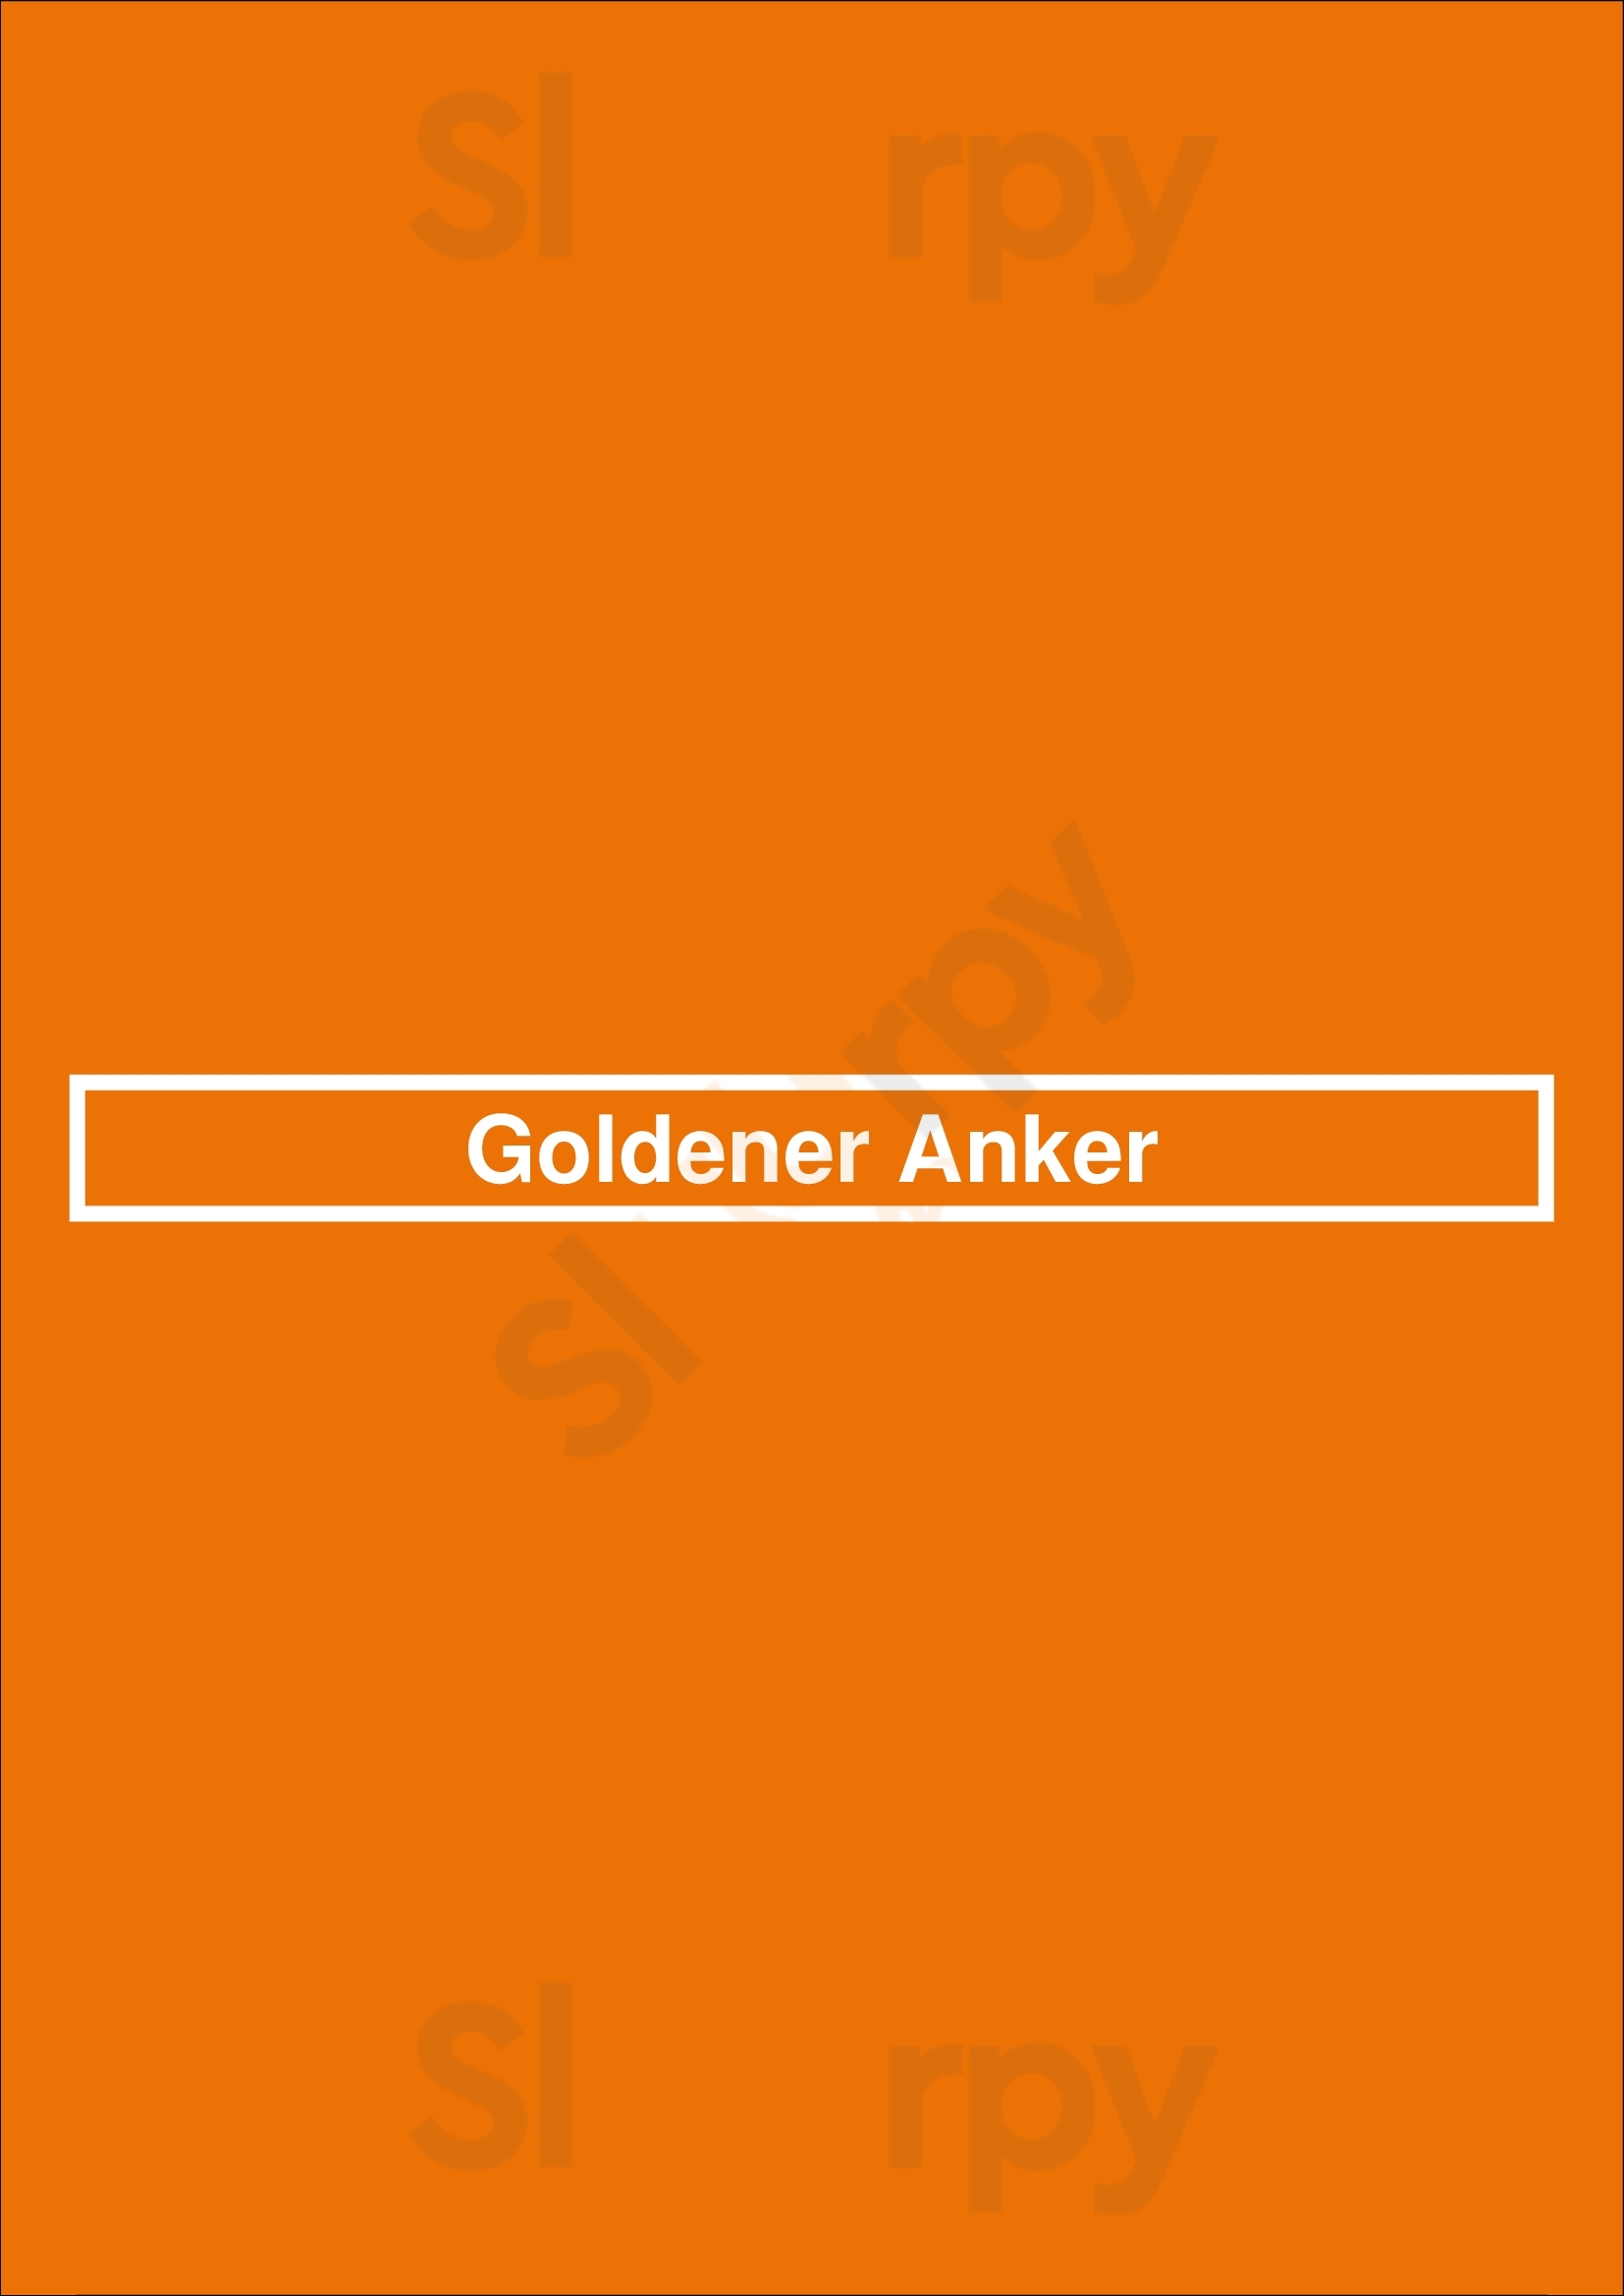 Goldener Anker Dorsten Menu - 1